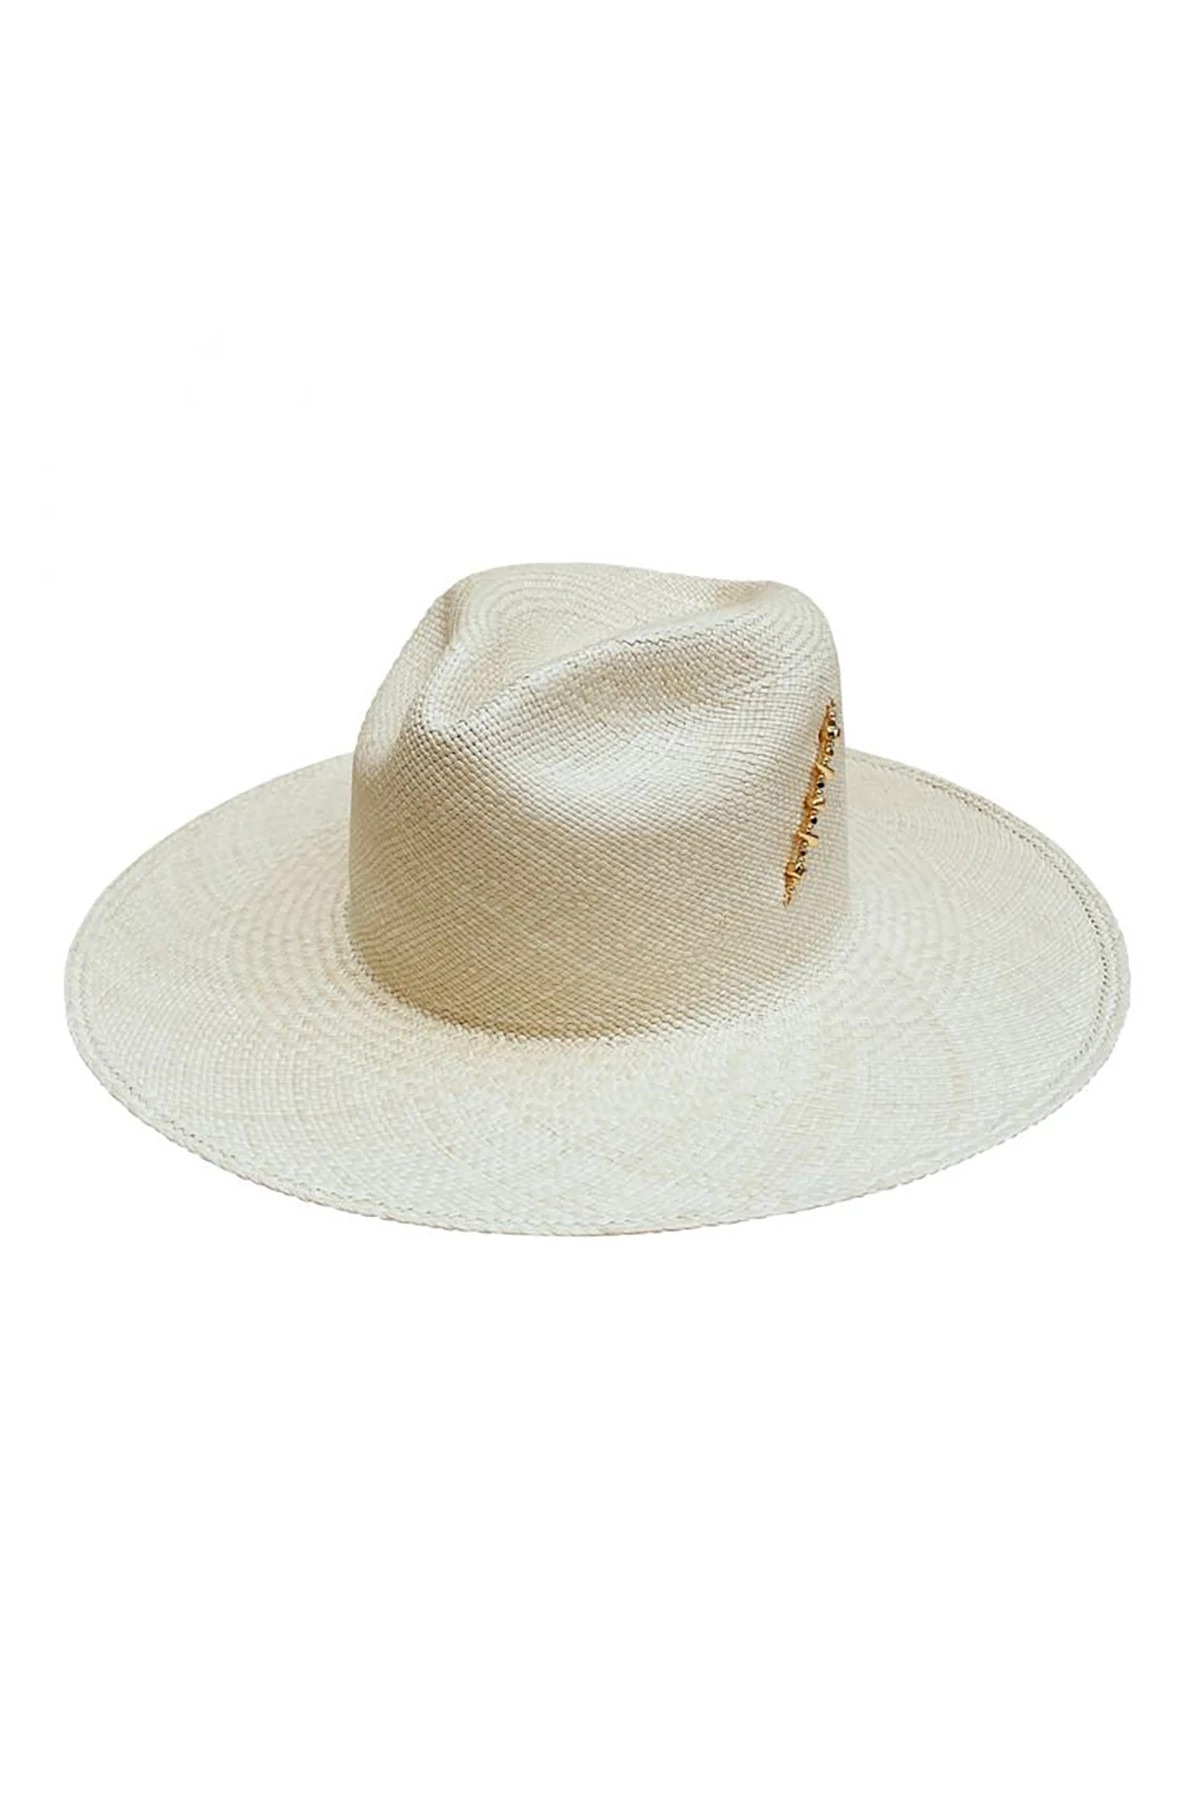 NATURAL Diana Panama Hat image number 1